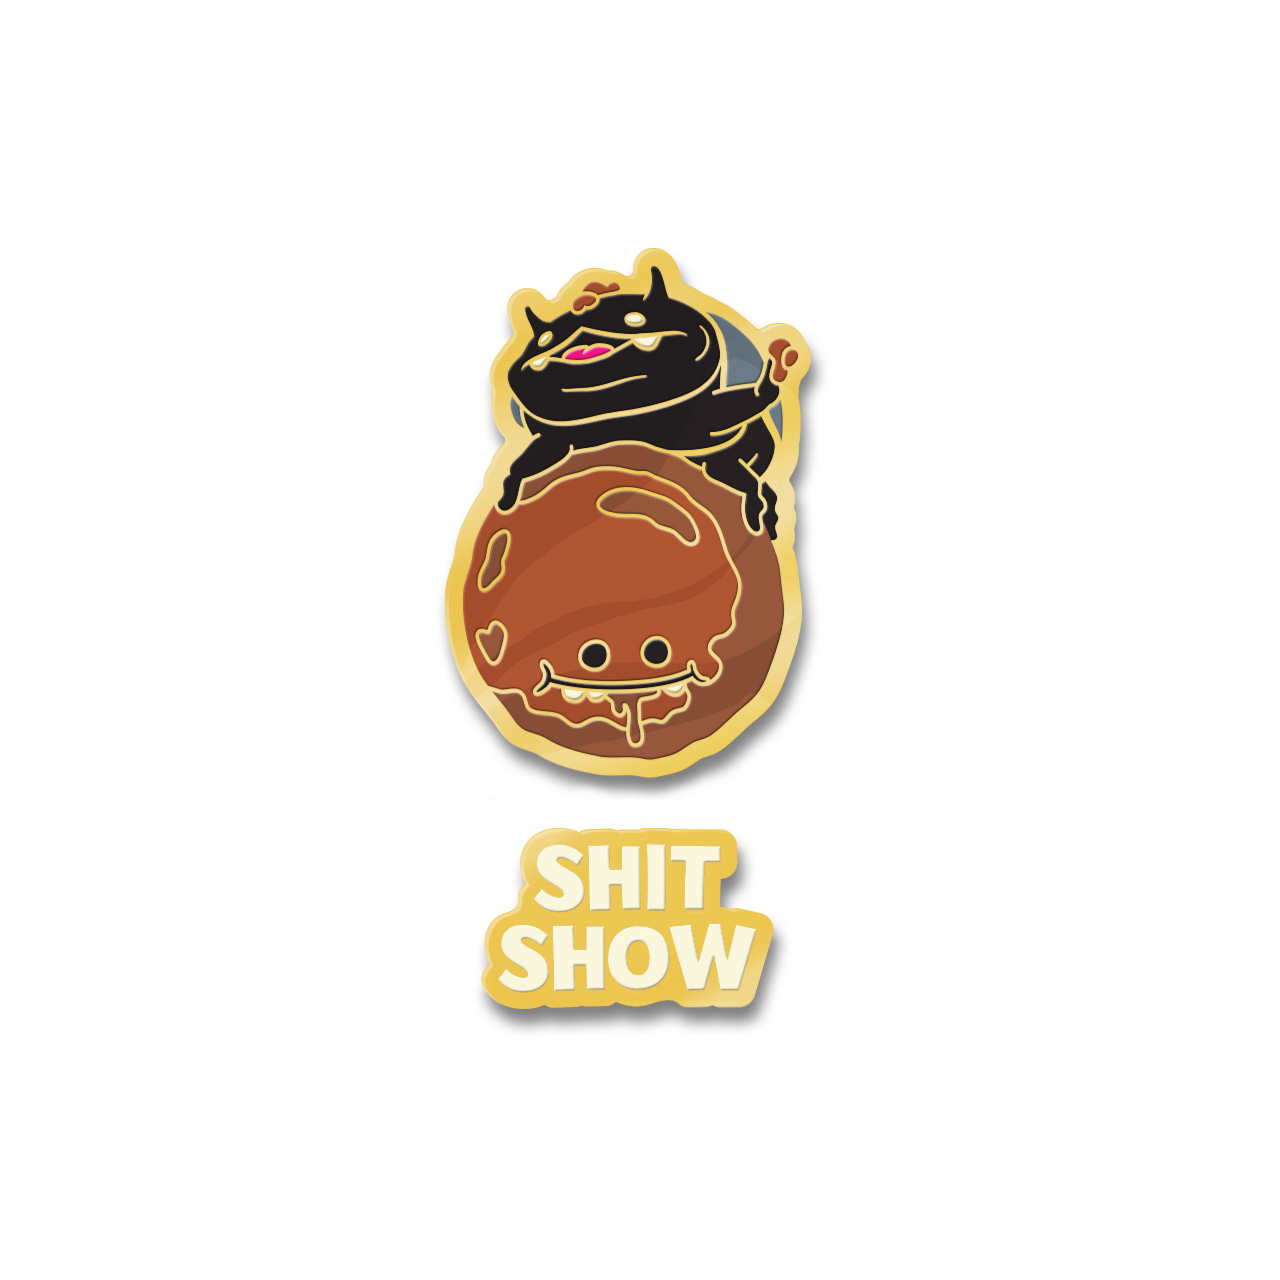 Dungby-Pooba-Shit-Show-enamel-pin-set-01